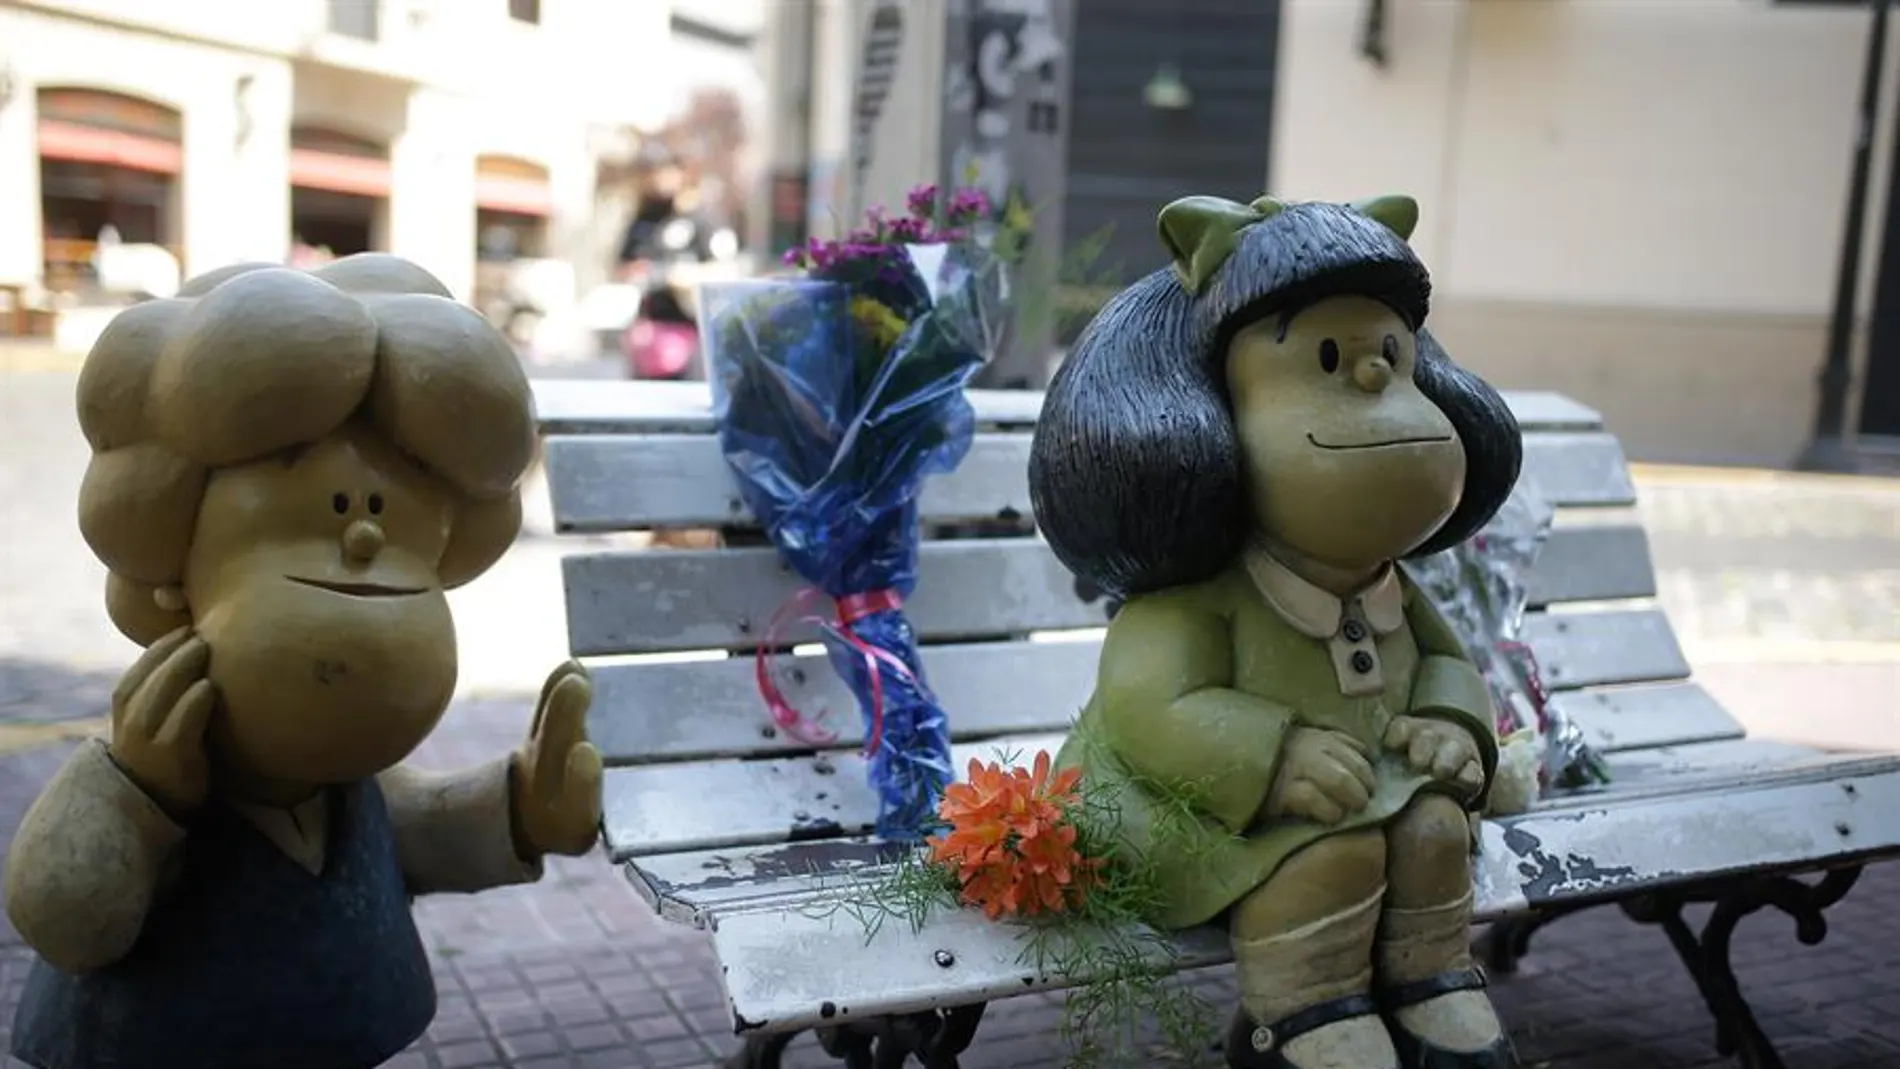 Flores junto a la escultura de Mafalda en Buenos Aires tras la muerte de Quino